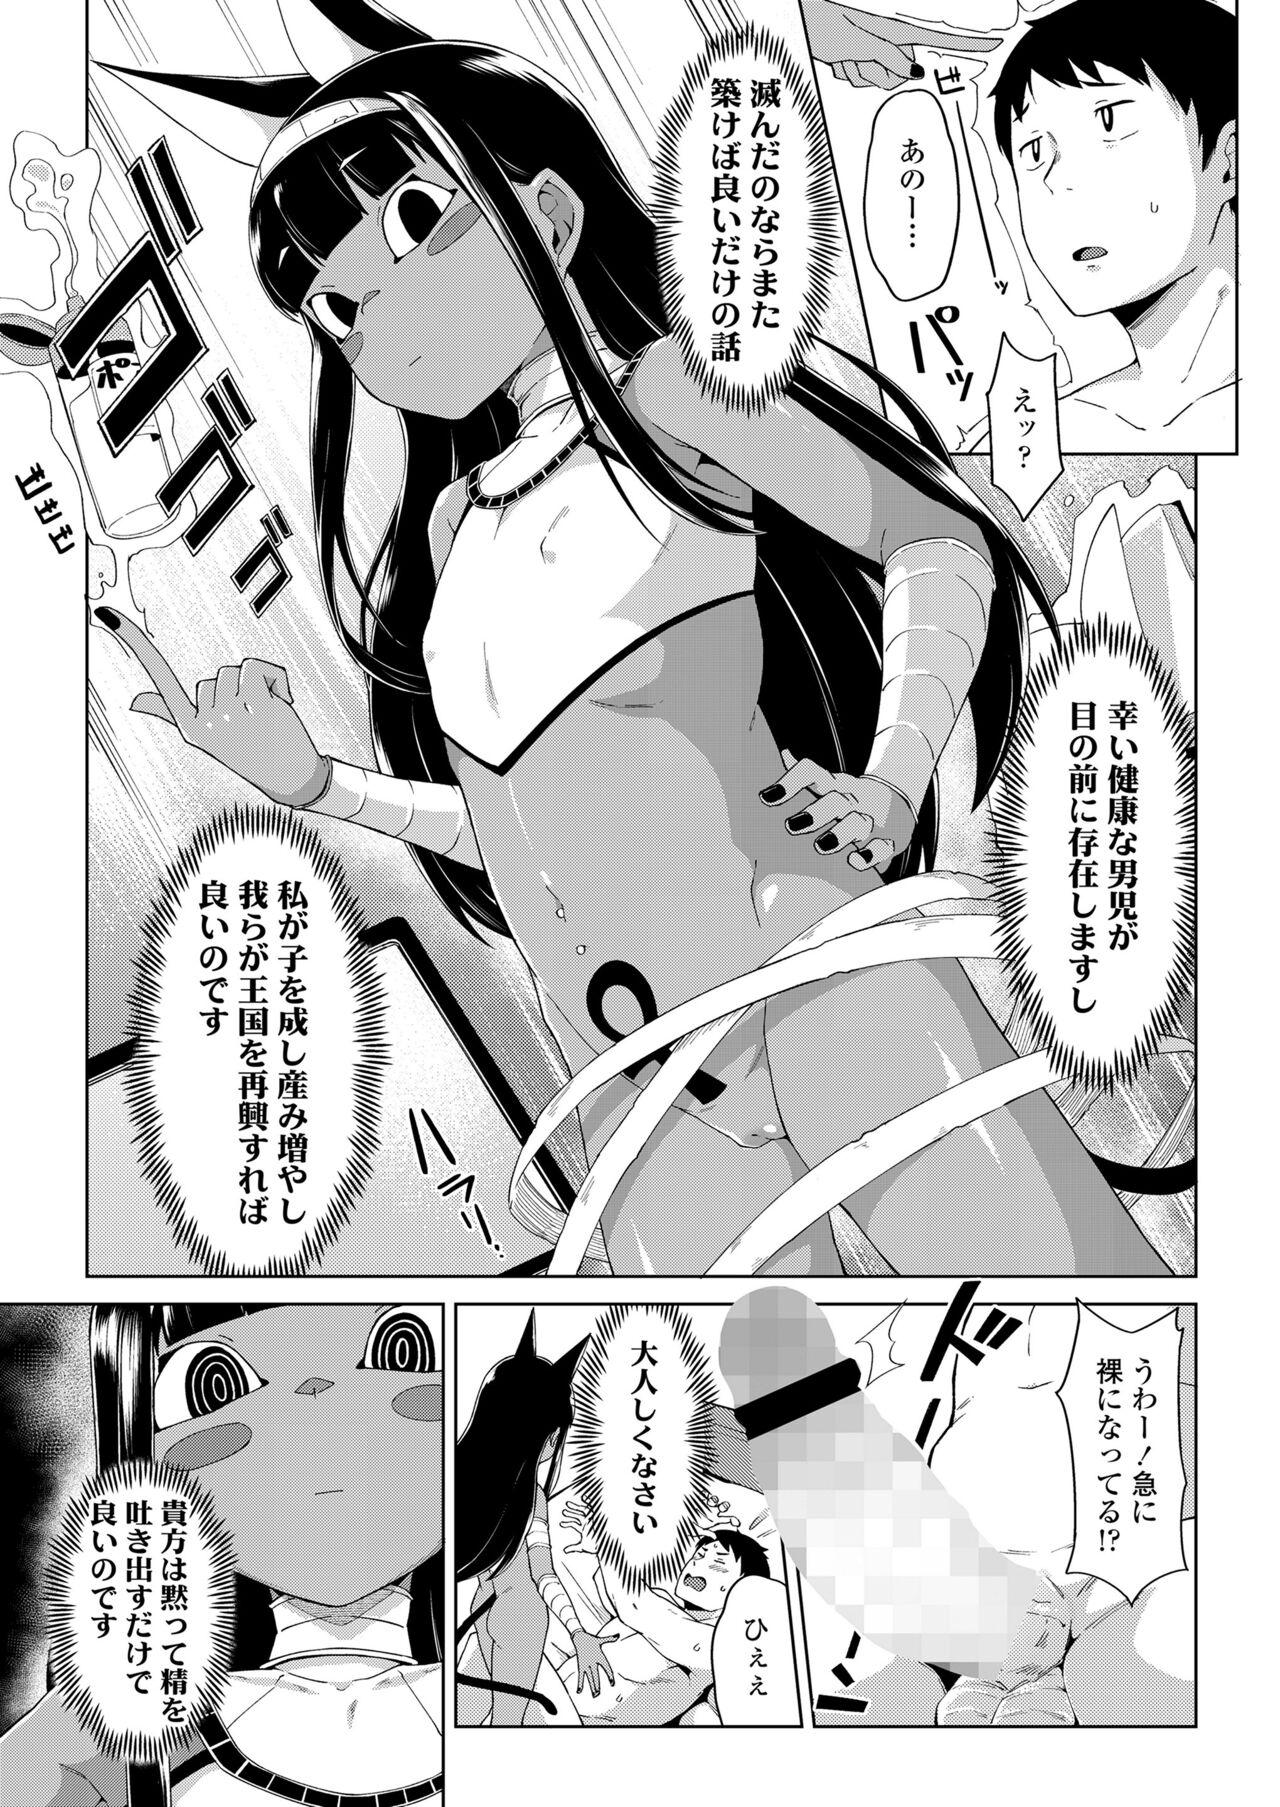 Emo Towako Oboro Emaki 13 Hot Women Fucking - Page 7